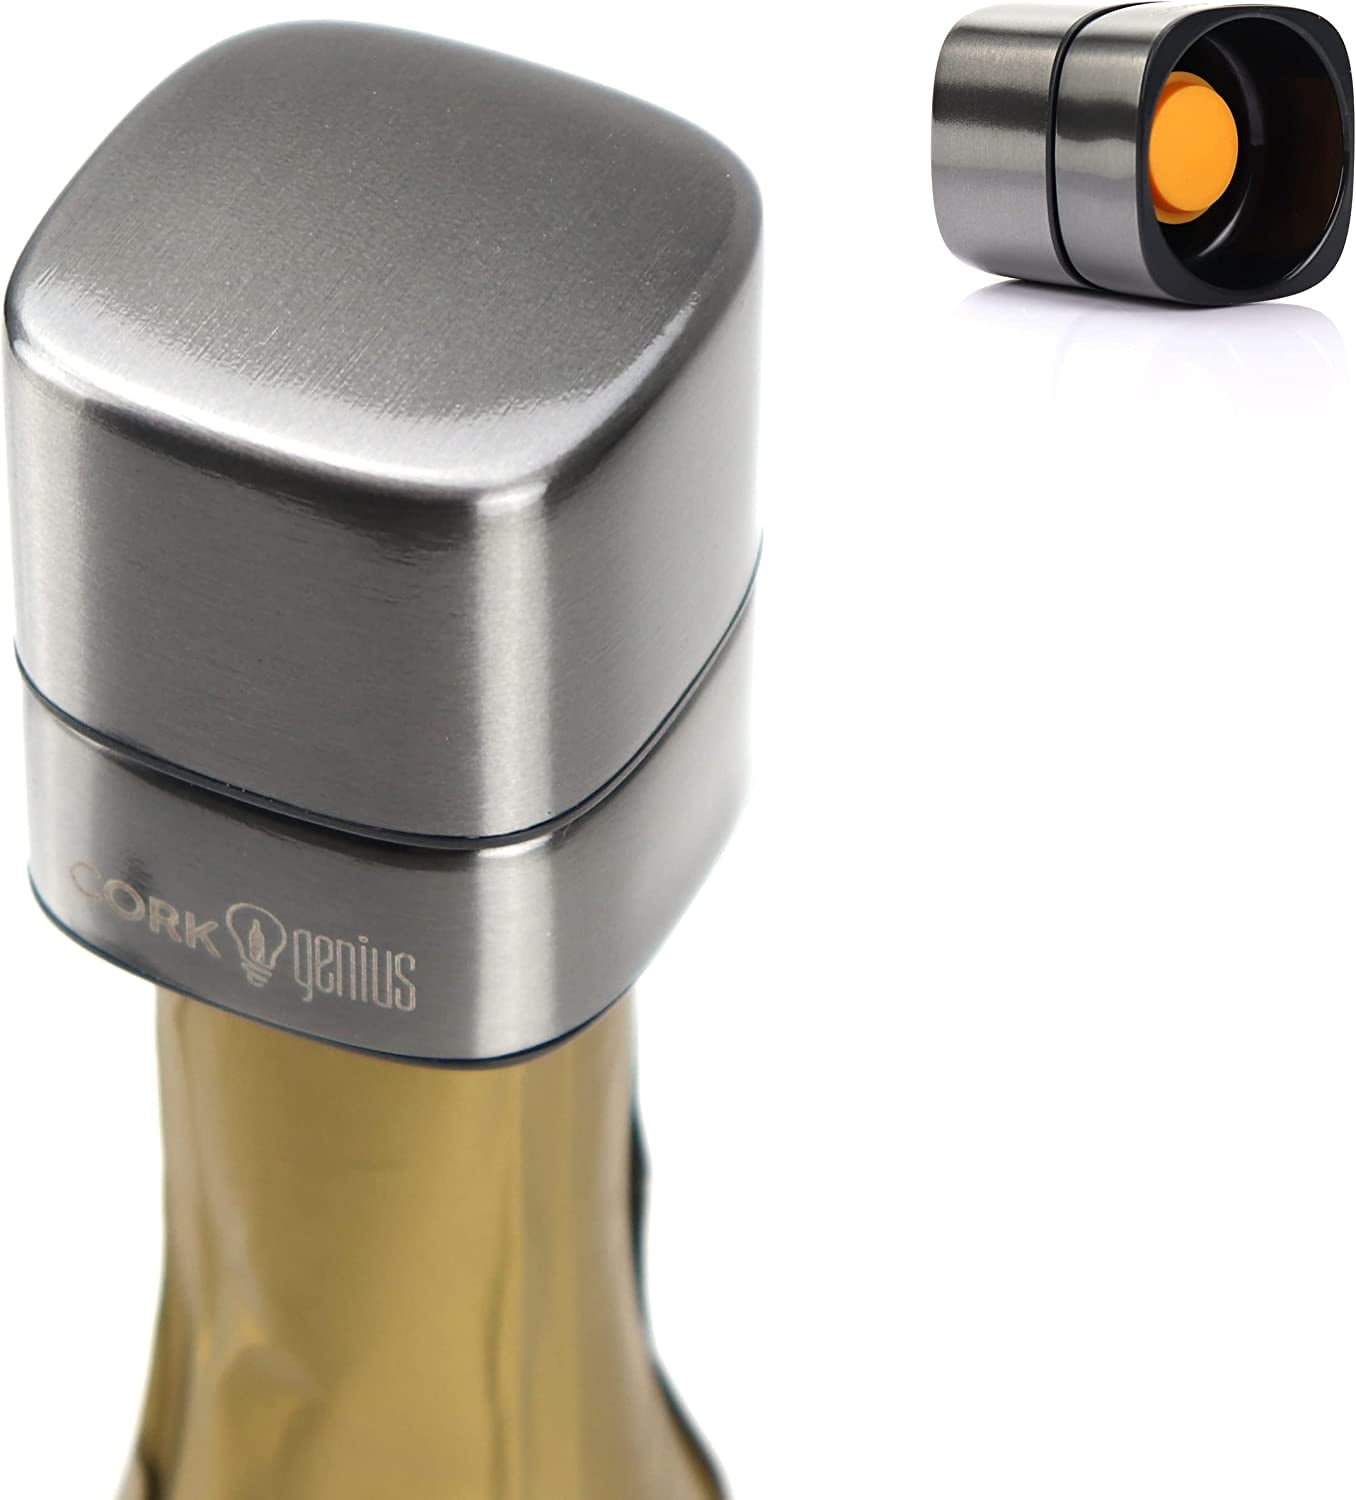 Spill-Proof Stainless Steel Wine Bottle Stopper Bottles Lock Plug